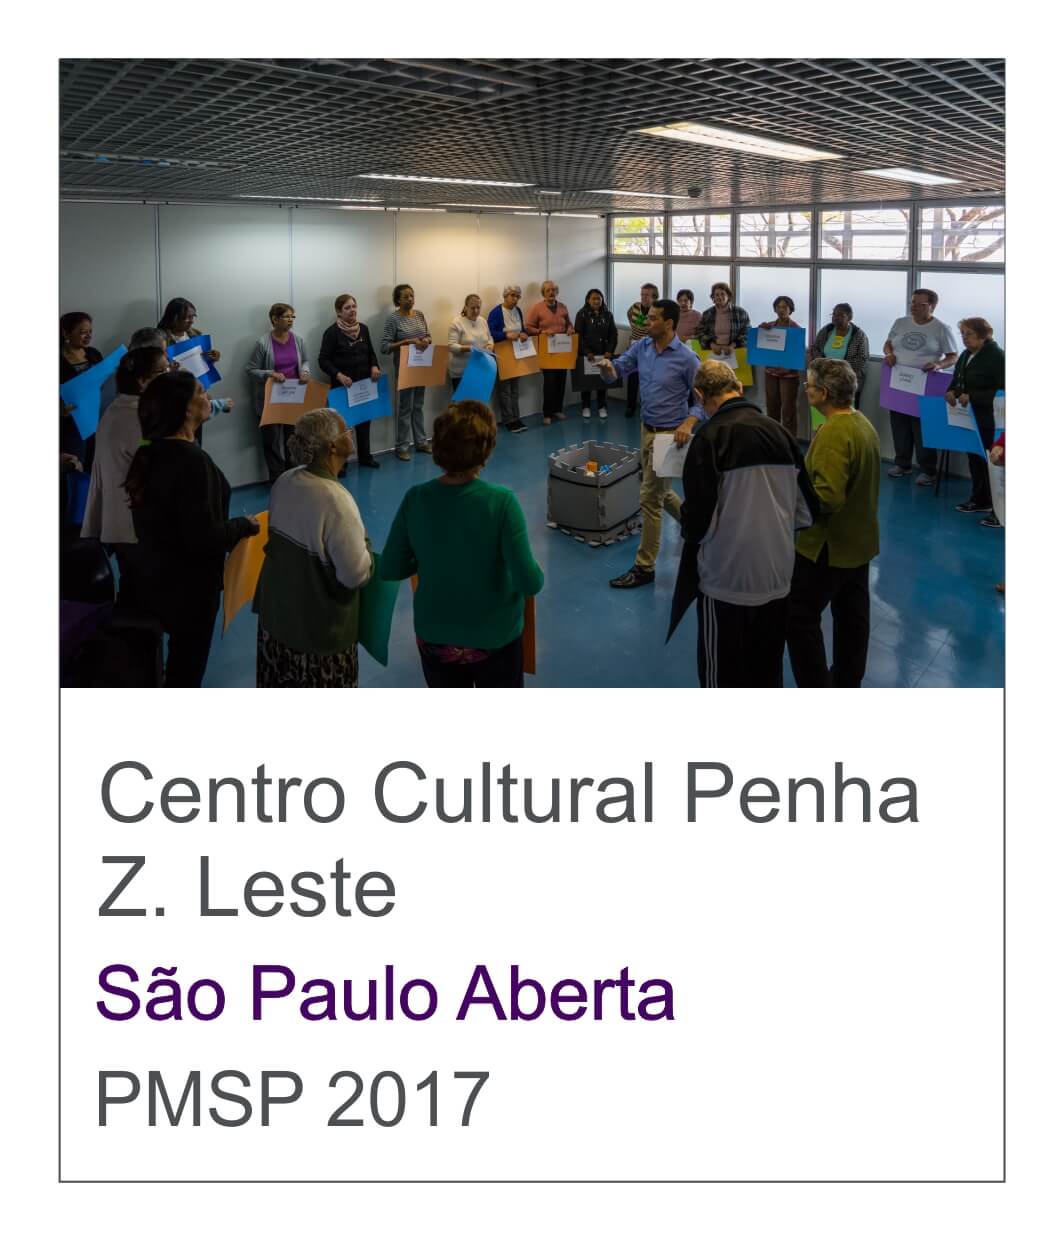 Centro Cultural Penha Atividade para idoso